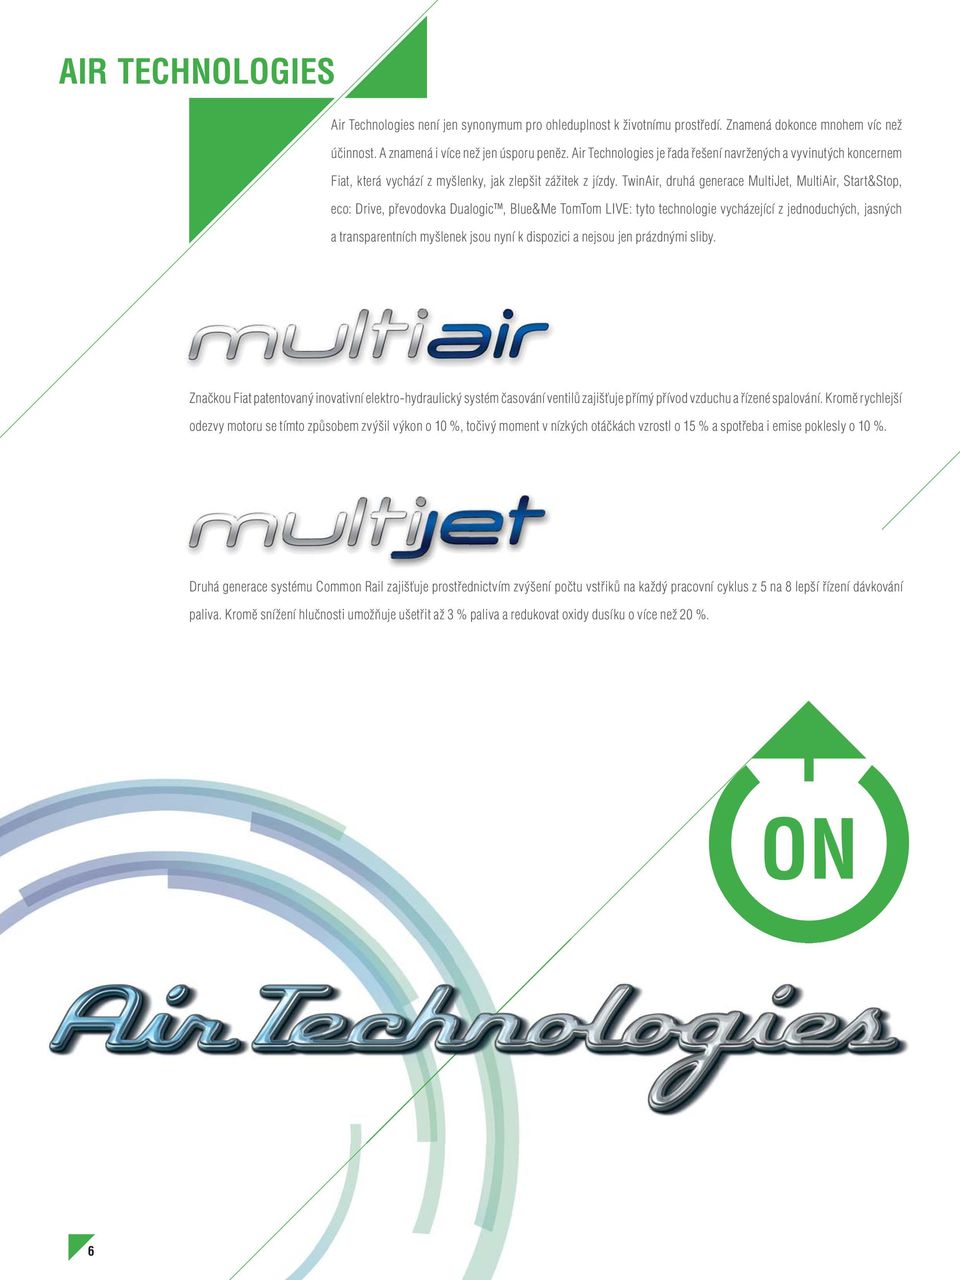 TwinAir, druhá generace MultiJet, MultiAir, Start&Stop, eco: Drive, převodovka Dualogic, Blue&Me TomTom LIVE: tyto technologie vycházející z jednoduchých, jasných a transparentních myšlenek jsou nyní